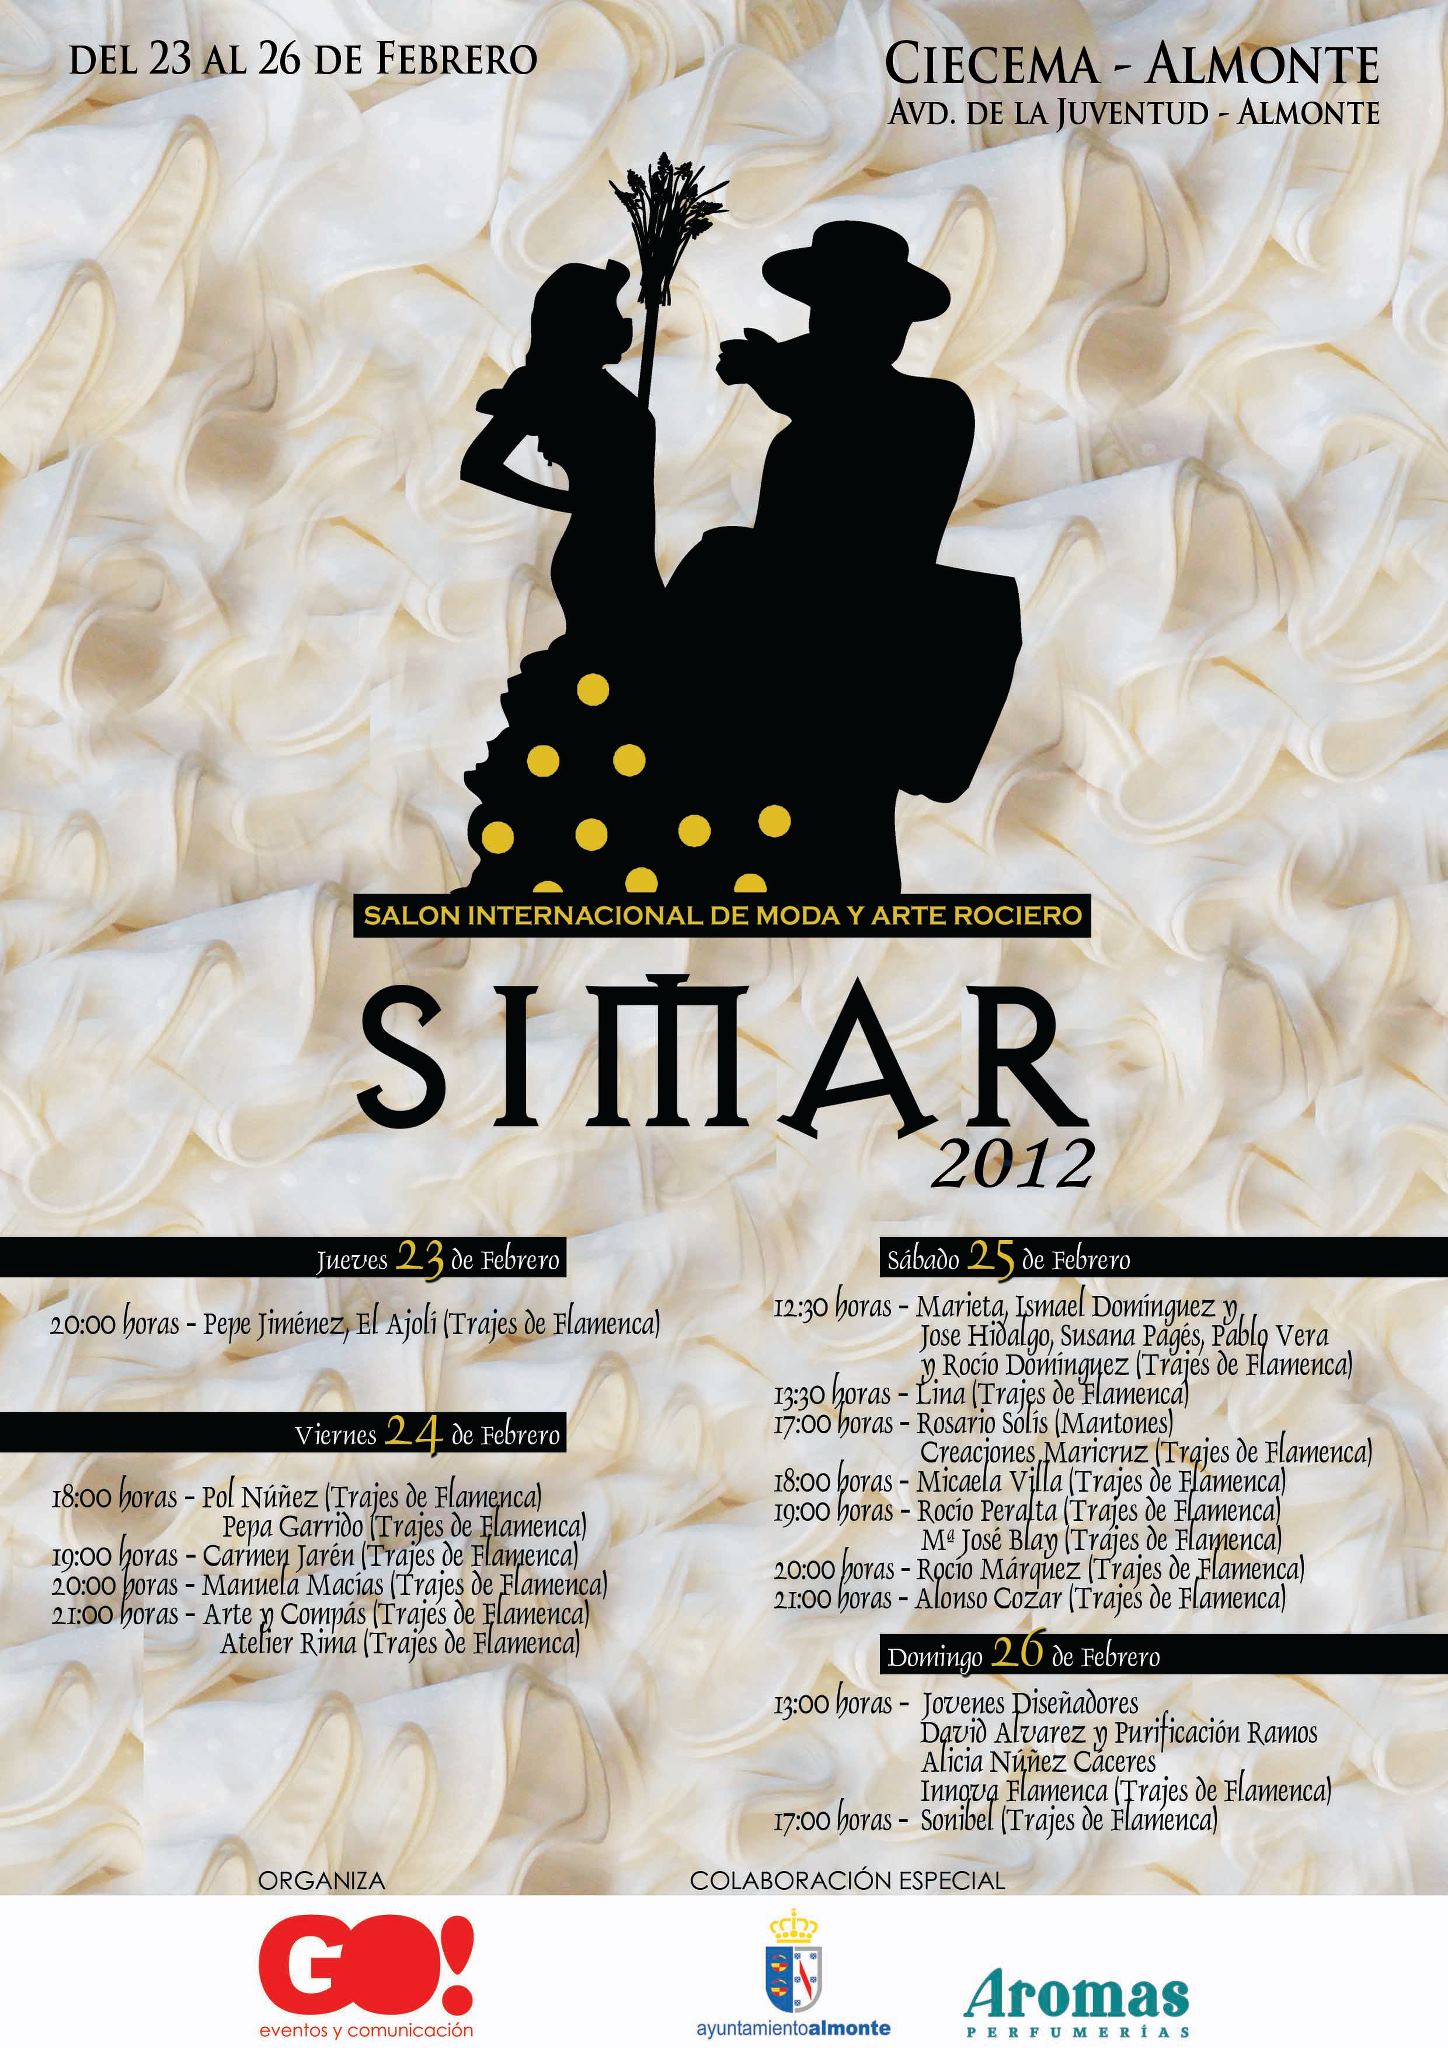 Simar 2012: Cartel y Programación